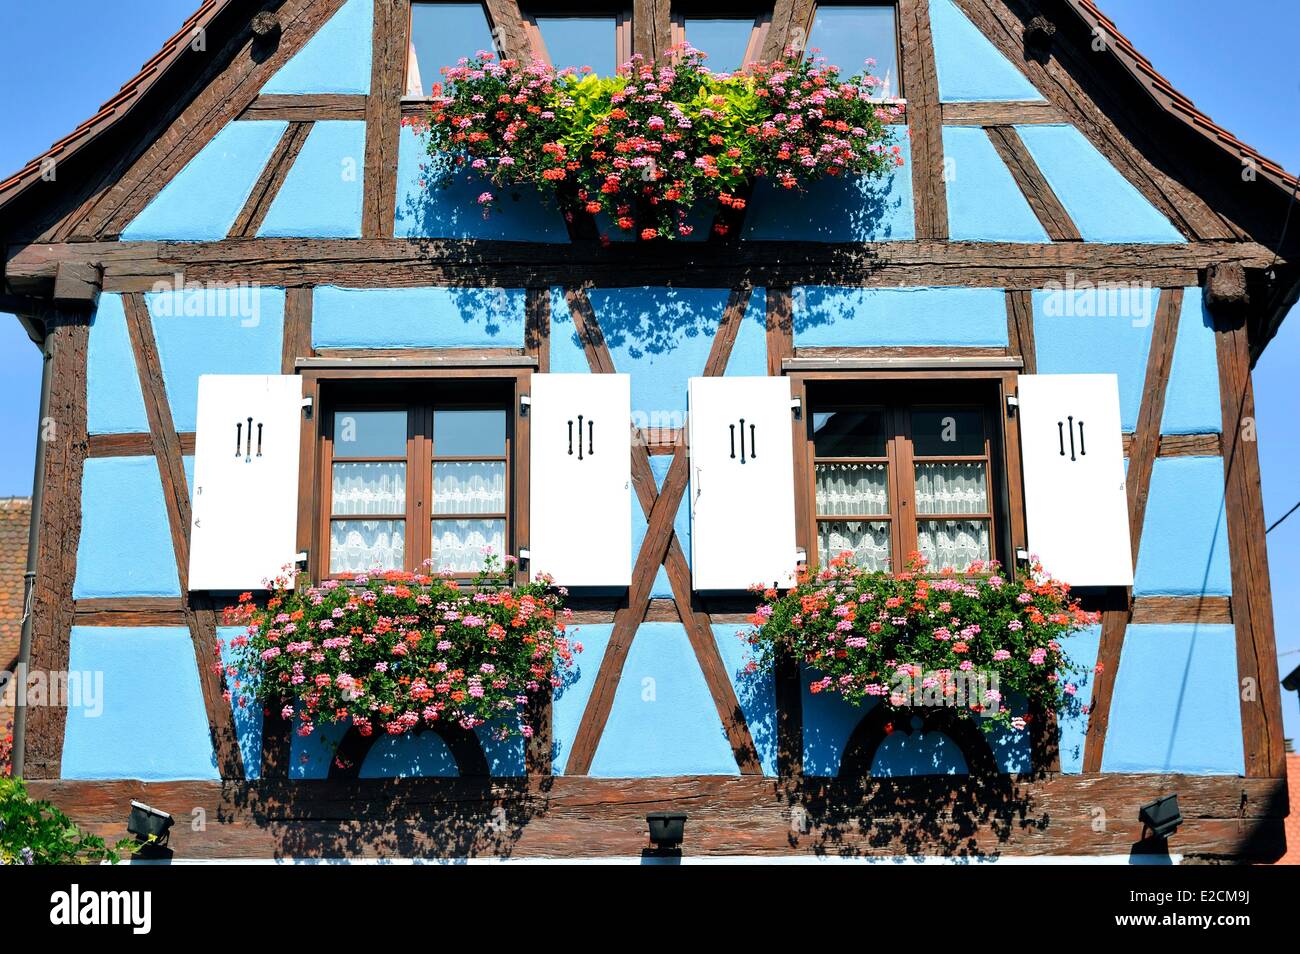 France Haut Rhin Alsace Wine Route Eguisheim labelled Les Plus Beaux Villages de France (The Most Beautiful Villages of France) Stock Photo